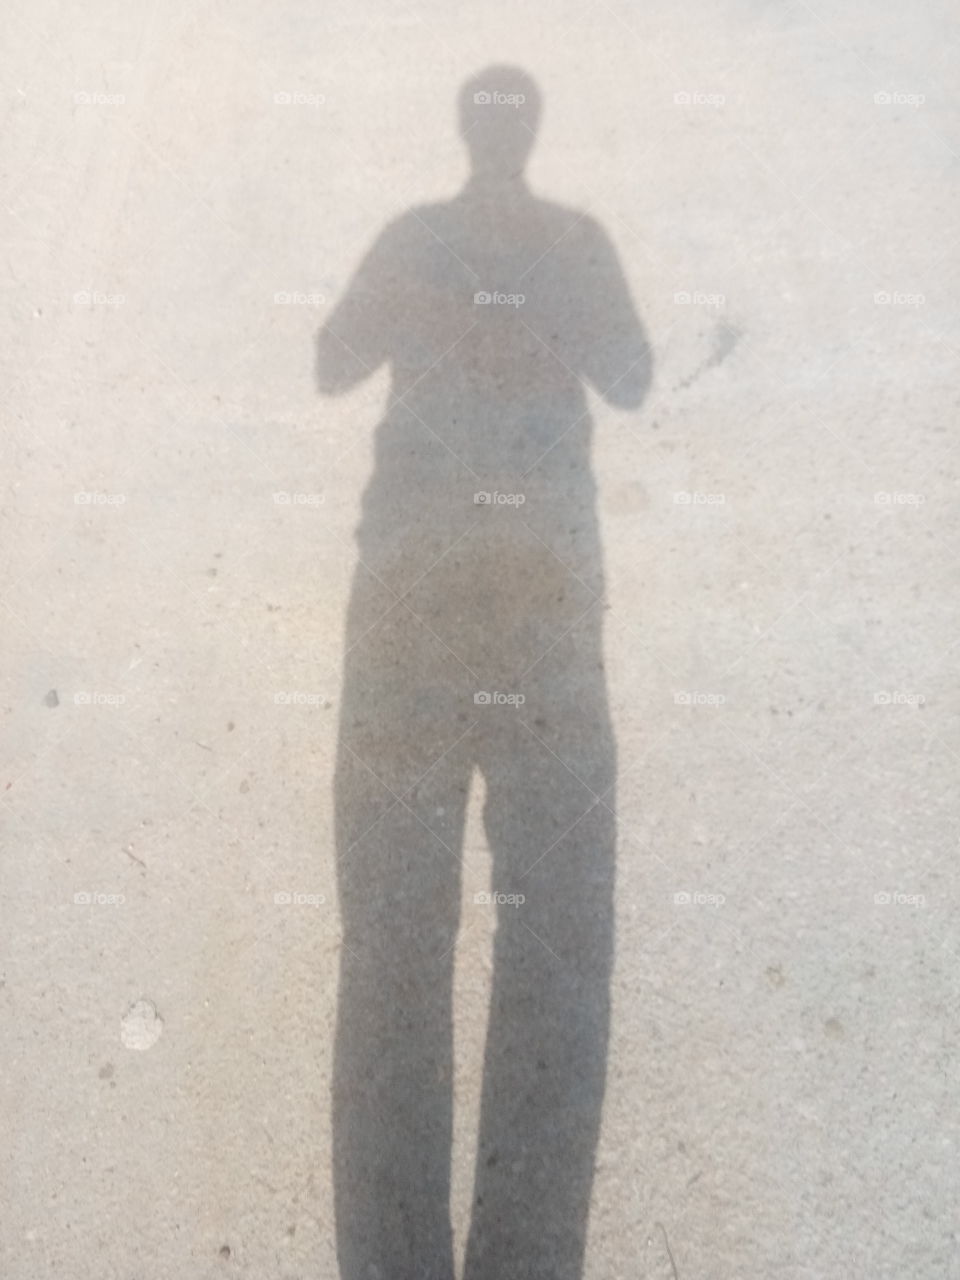 #shadow